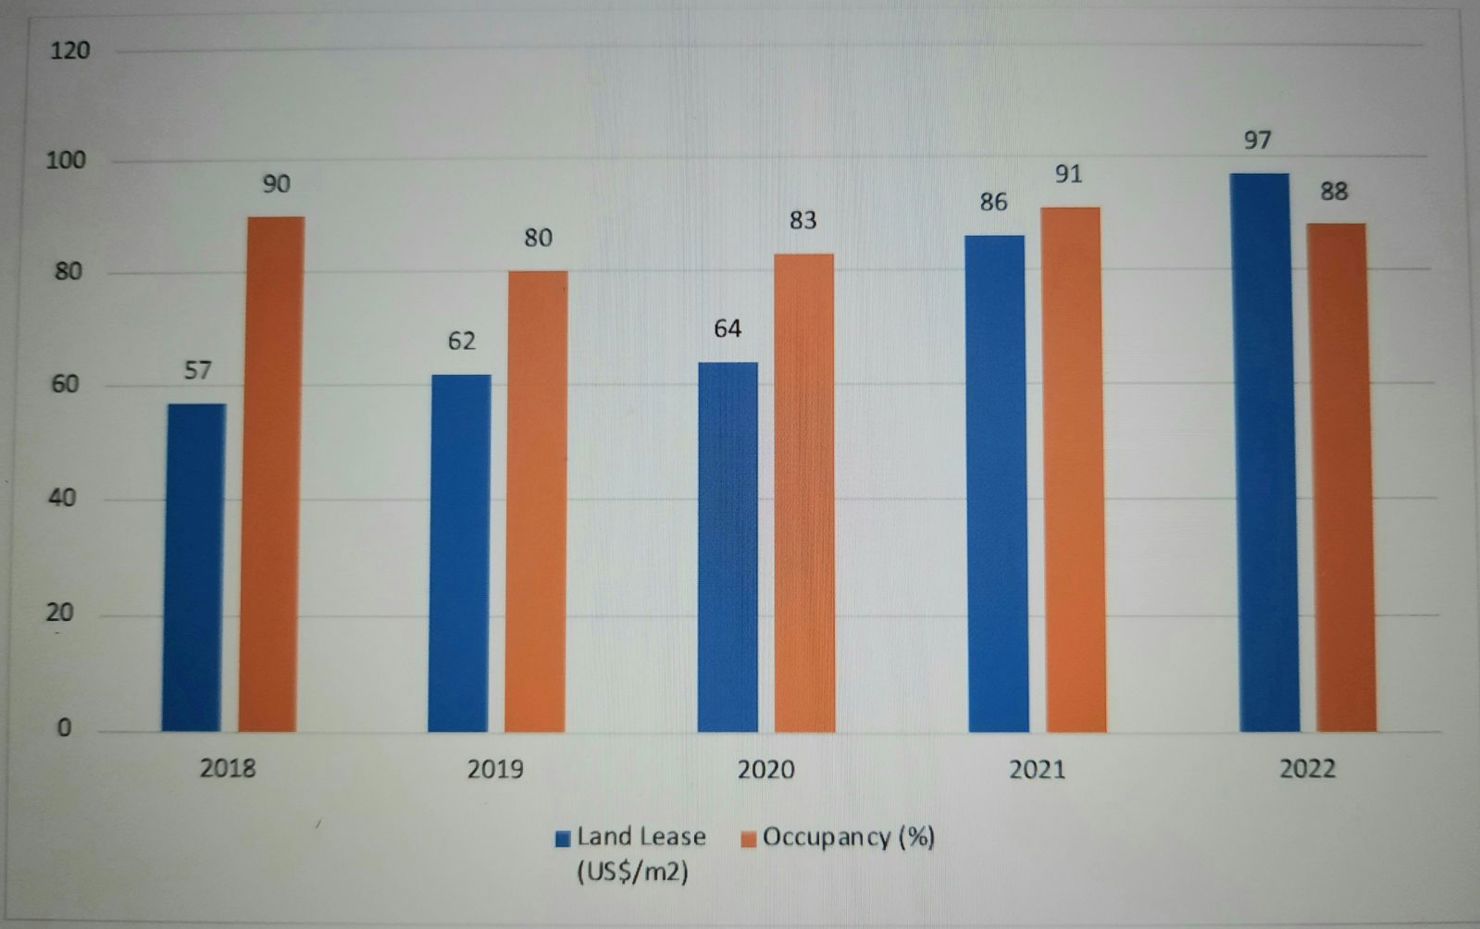 Biểu đồ: Mức độ tăng trưởng về gi&aacute; thu&ecirc; v&agrave; tỷ lệ lấp đầy đất c&ocirc;ng nghiệp tại Vĩnh Ph&uacute;c từ năm 2018-2022